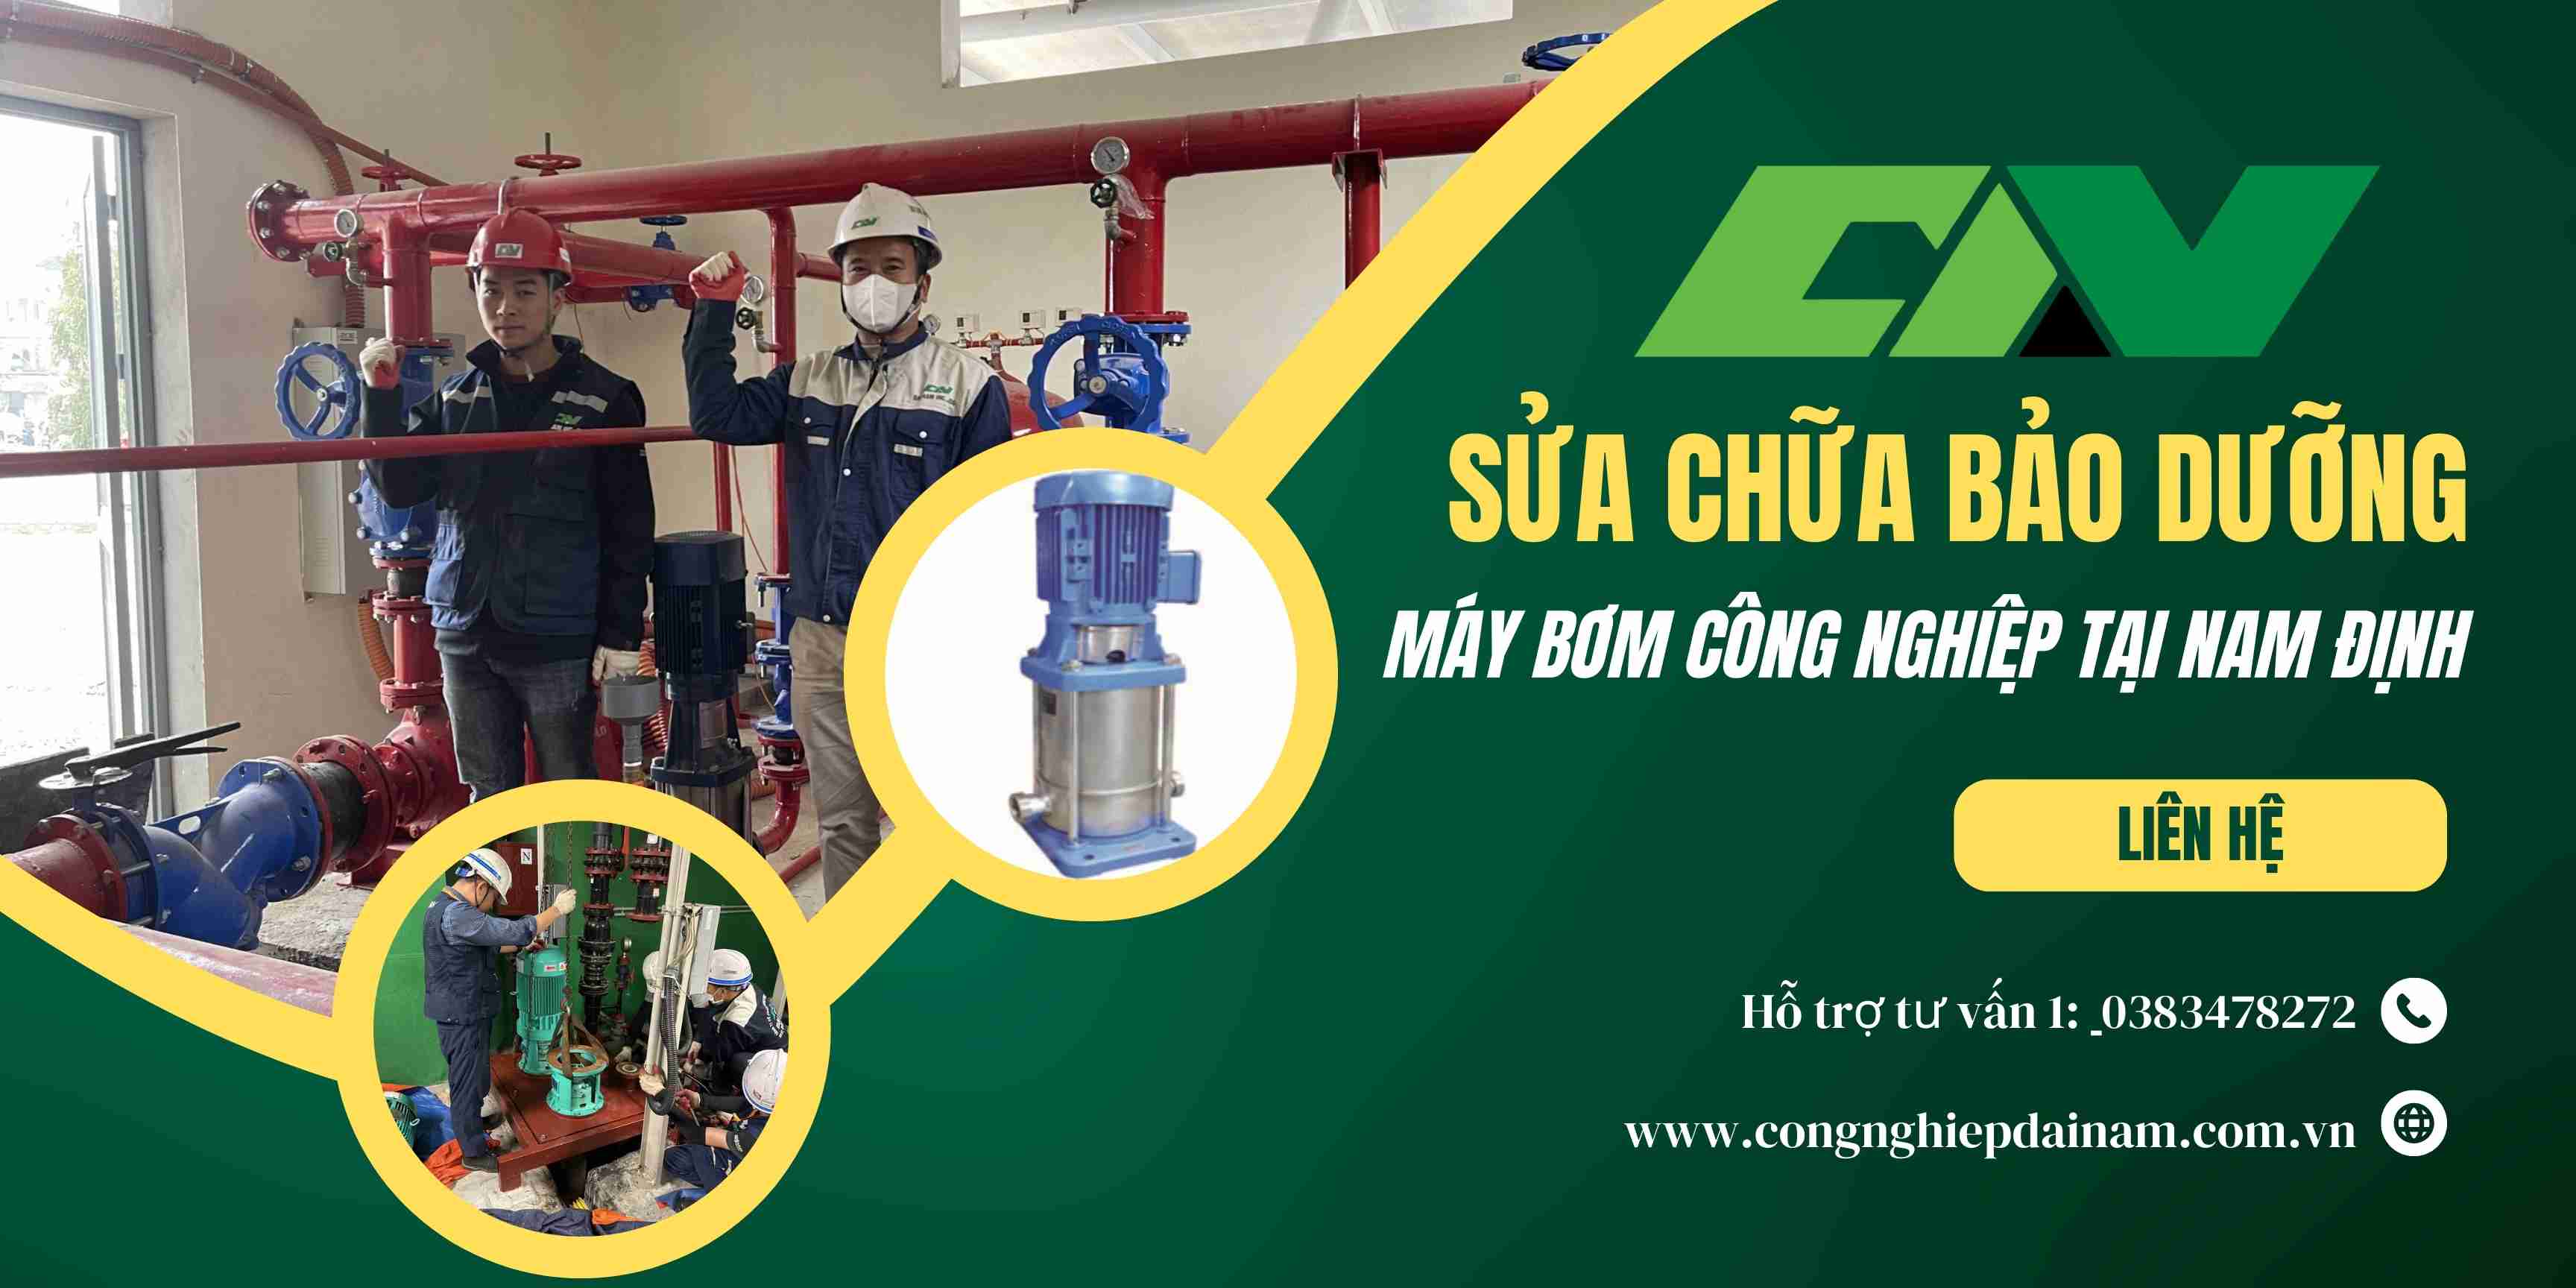 Bảo dưỡng và sửa chữa máy bơm công nghiệp tại Nam Định